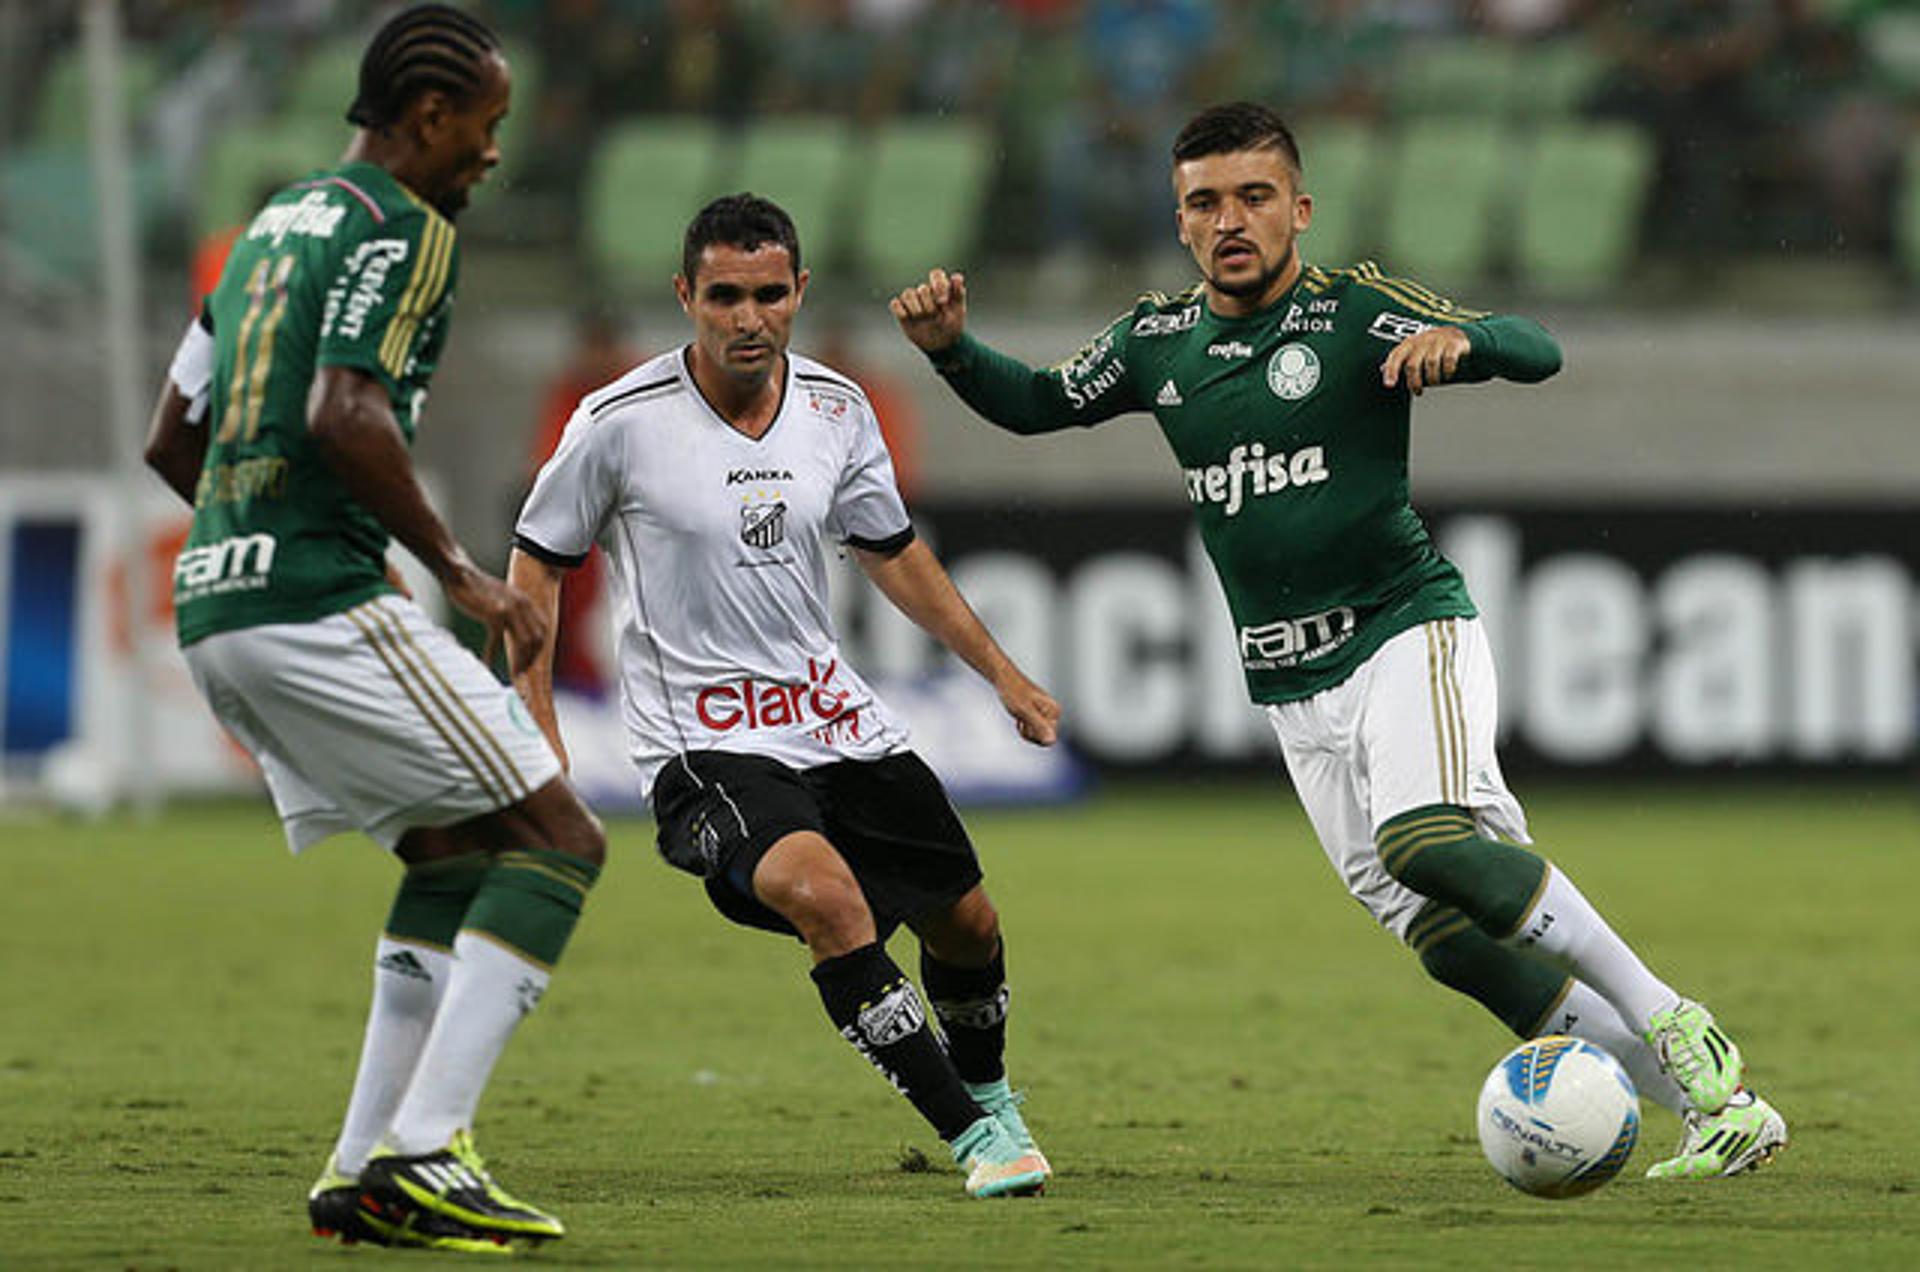 Último encontro: Palmeiras 1 x 0 Bragantino (Paulistão 2015)